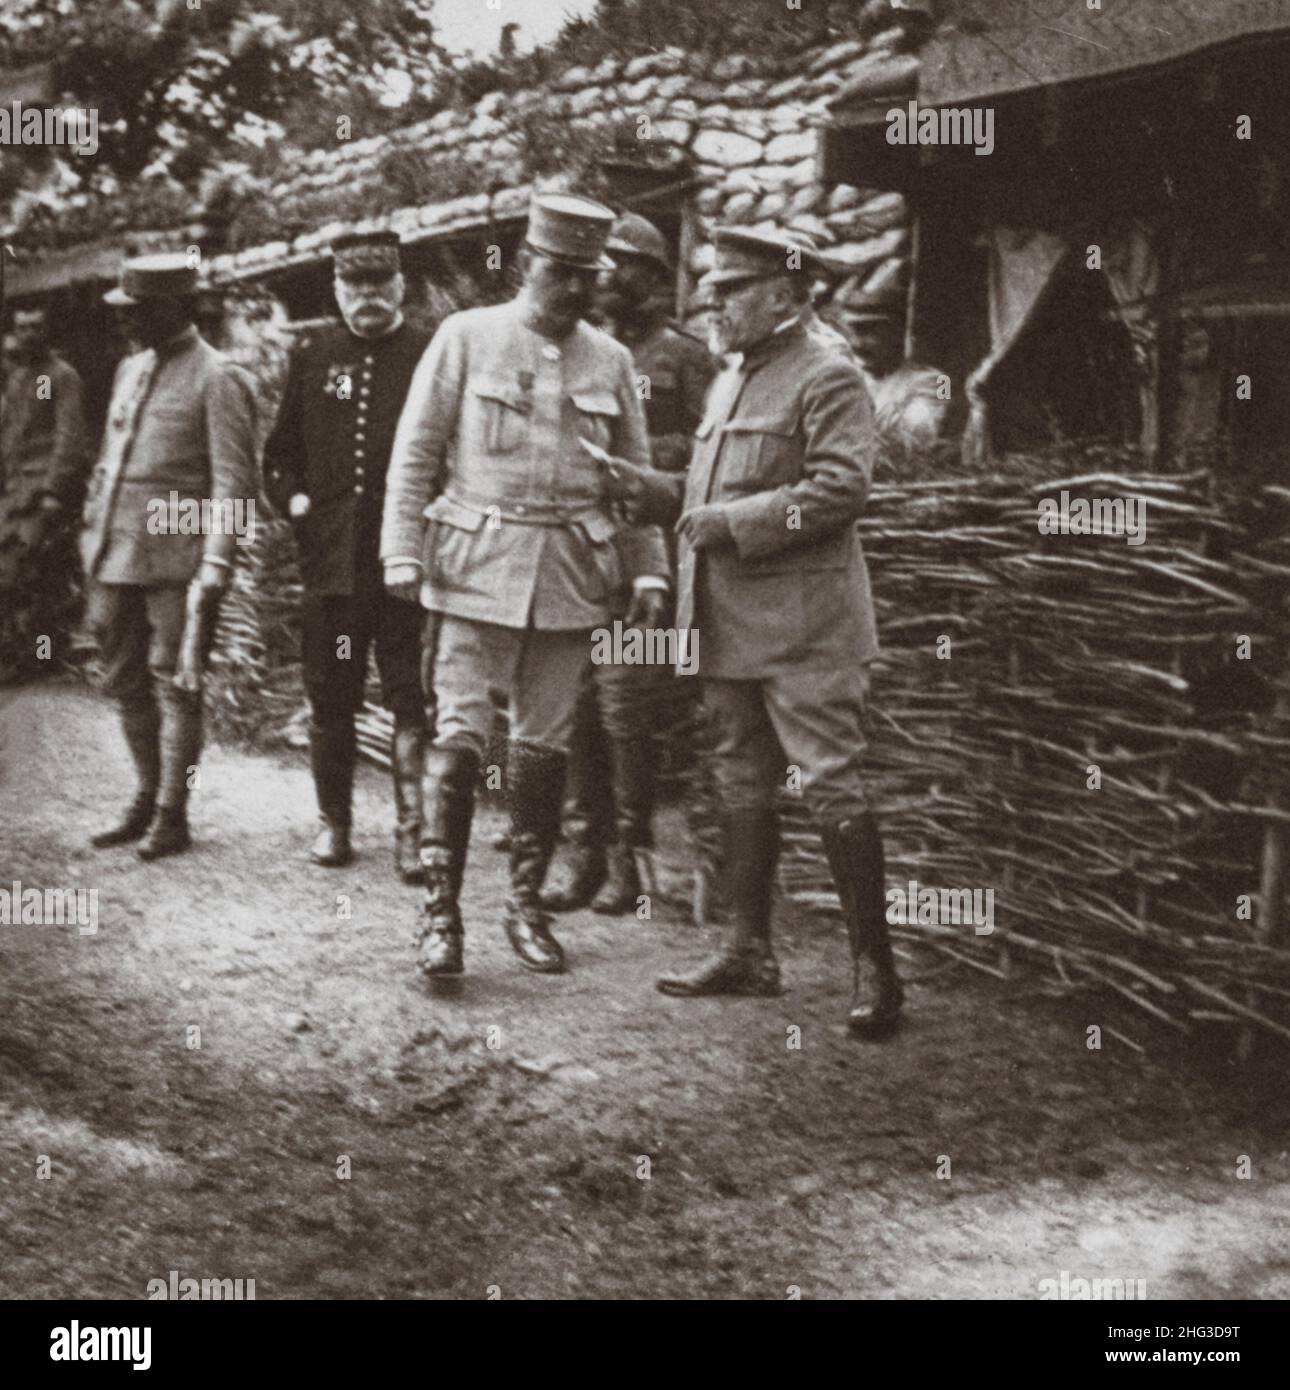 Archivfoto des Ersten Weltkriegs. Präsident Poincare und Marshall Joffre besuchen Offiziersquartiere an der Somme-Front. 1914-1918 Stockfoto